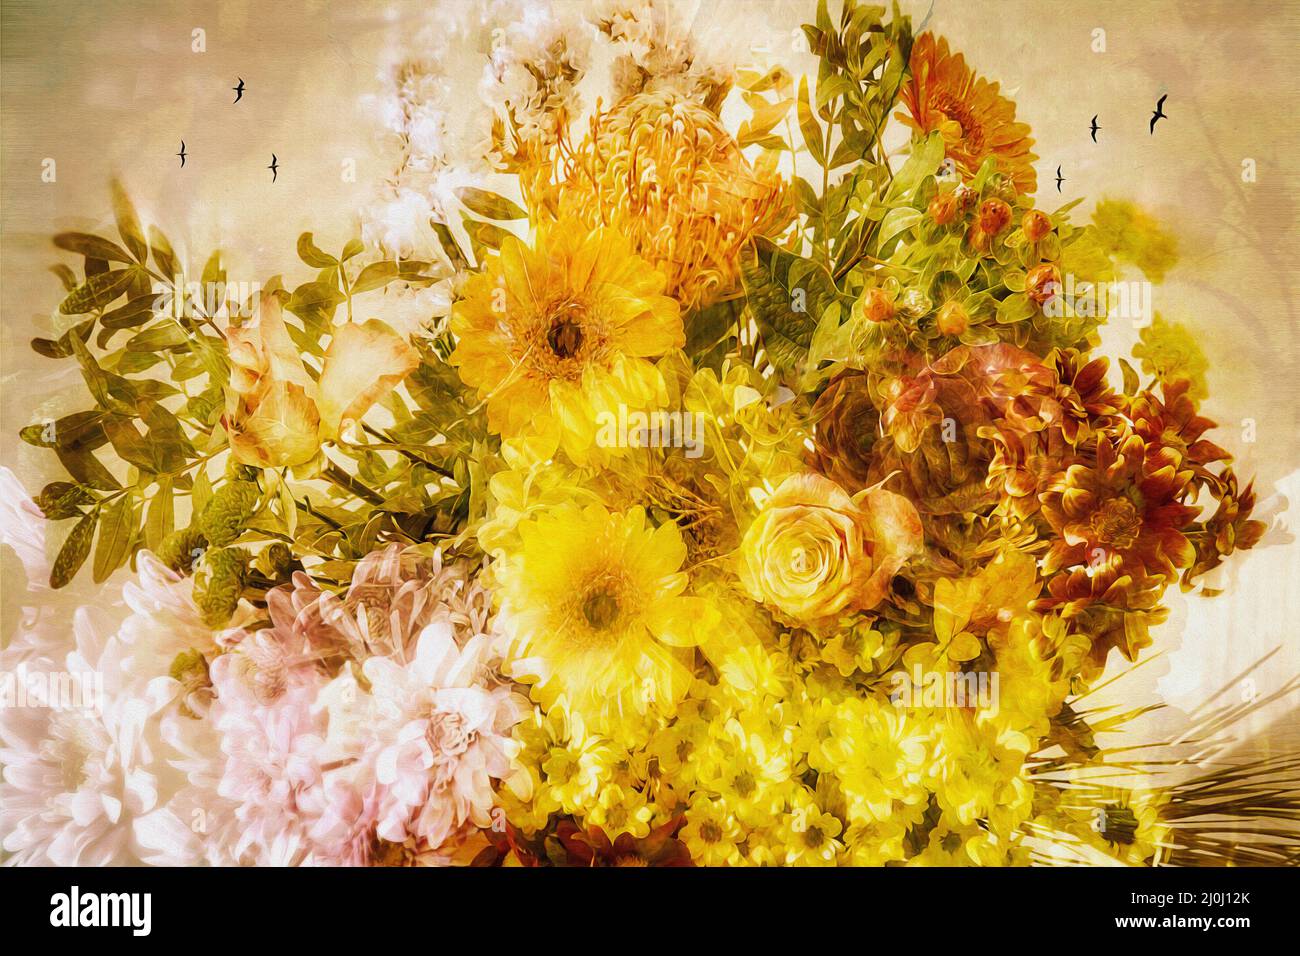 ARTE FLORAL: Ramo de flores otoñales (imagen HDR) Foto de stock